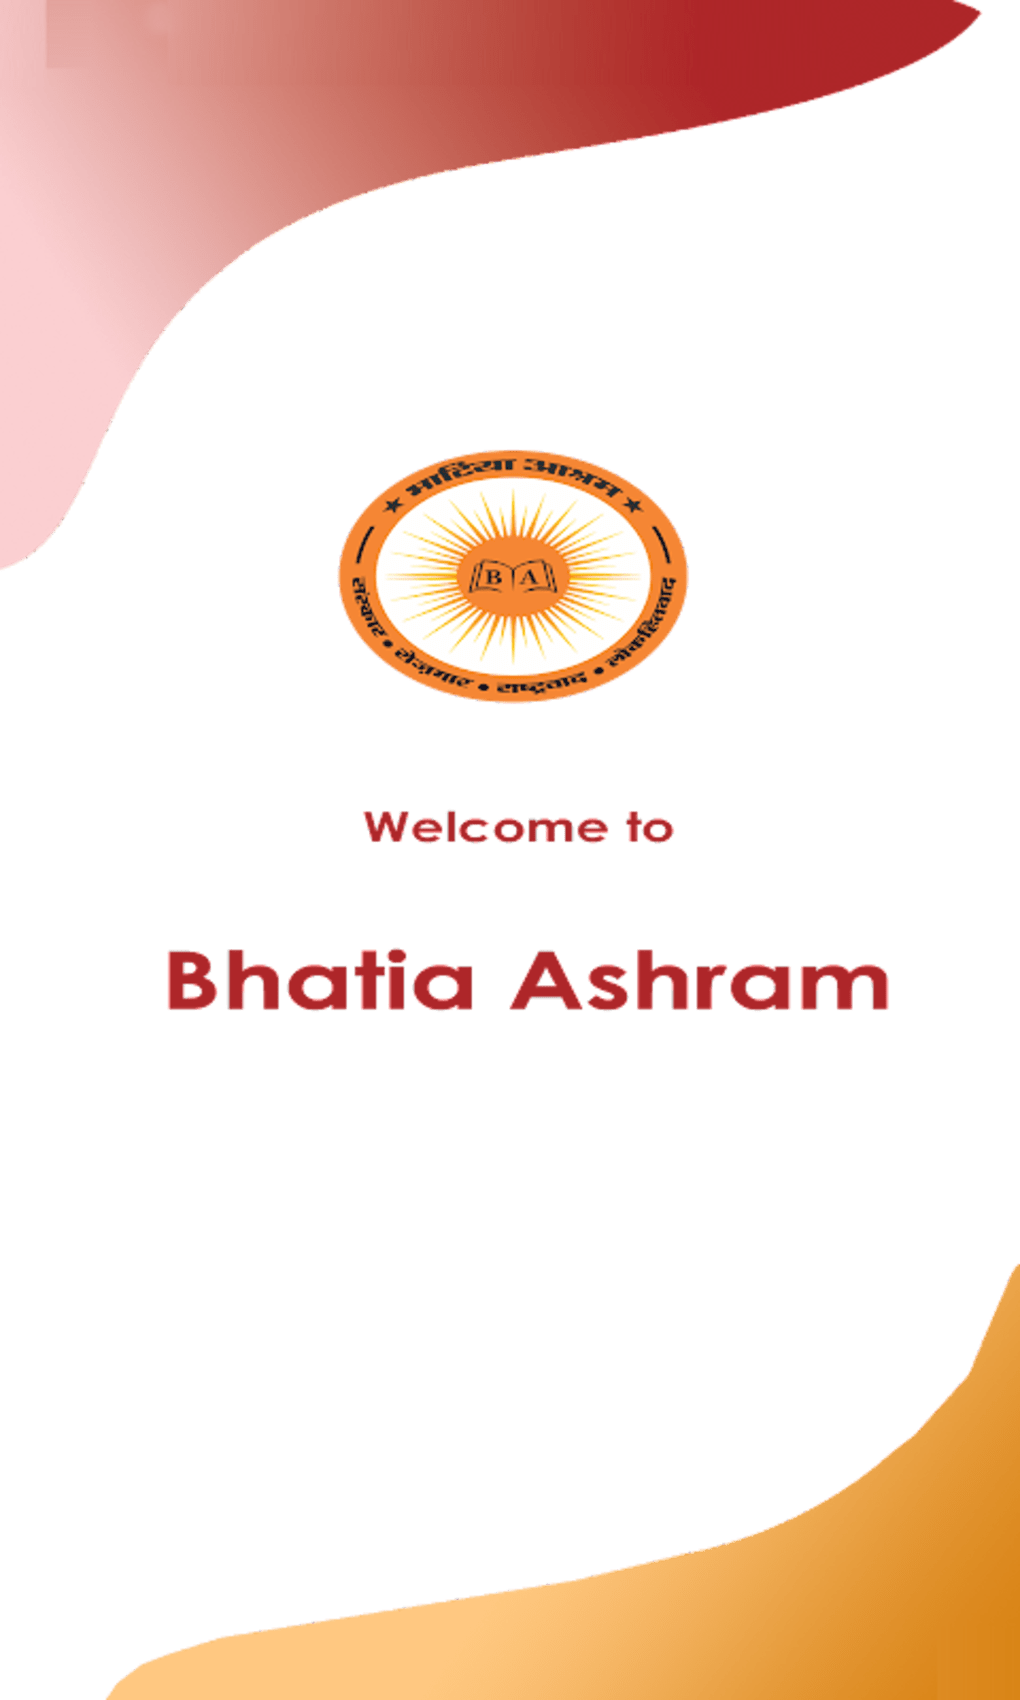 Bhatia Ashram APK для Android — Скачать